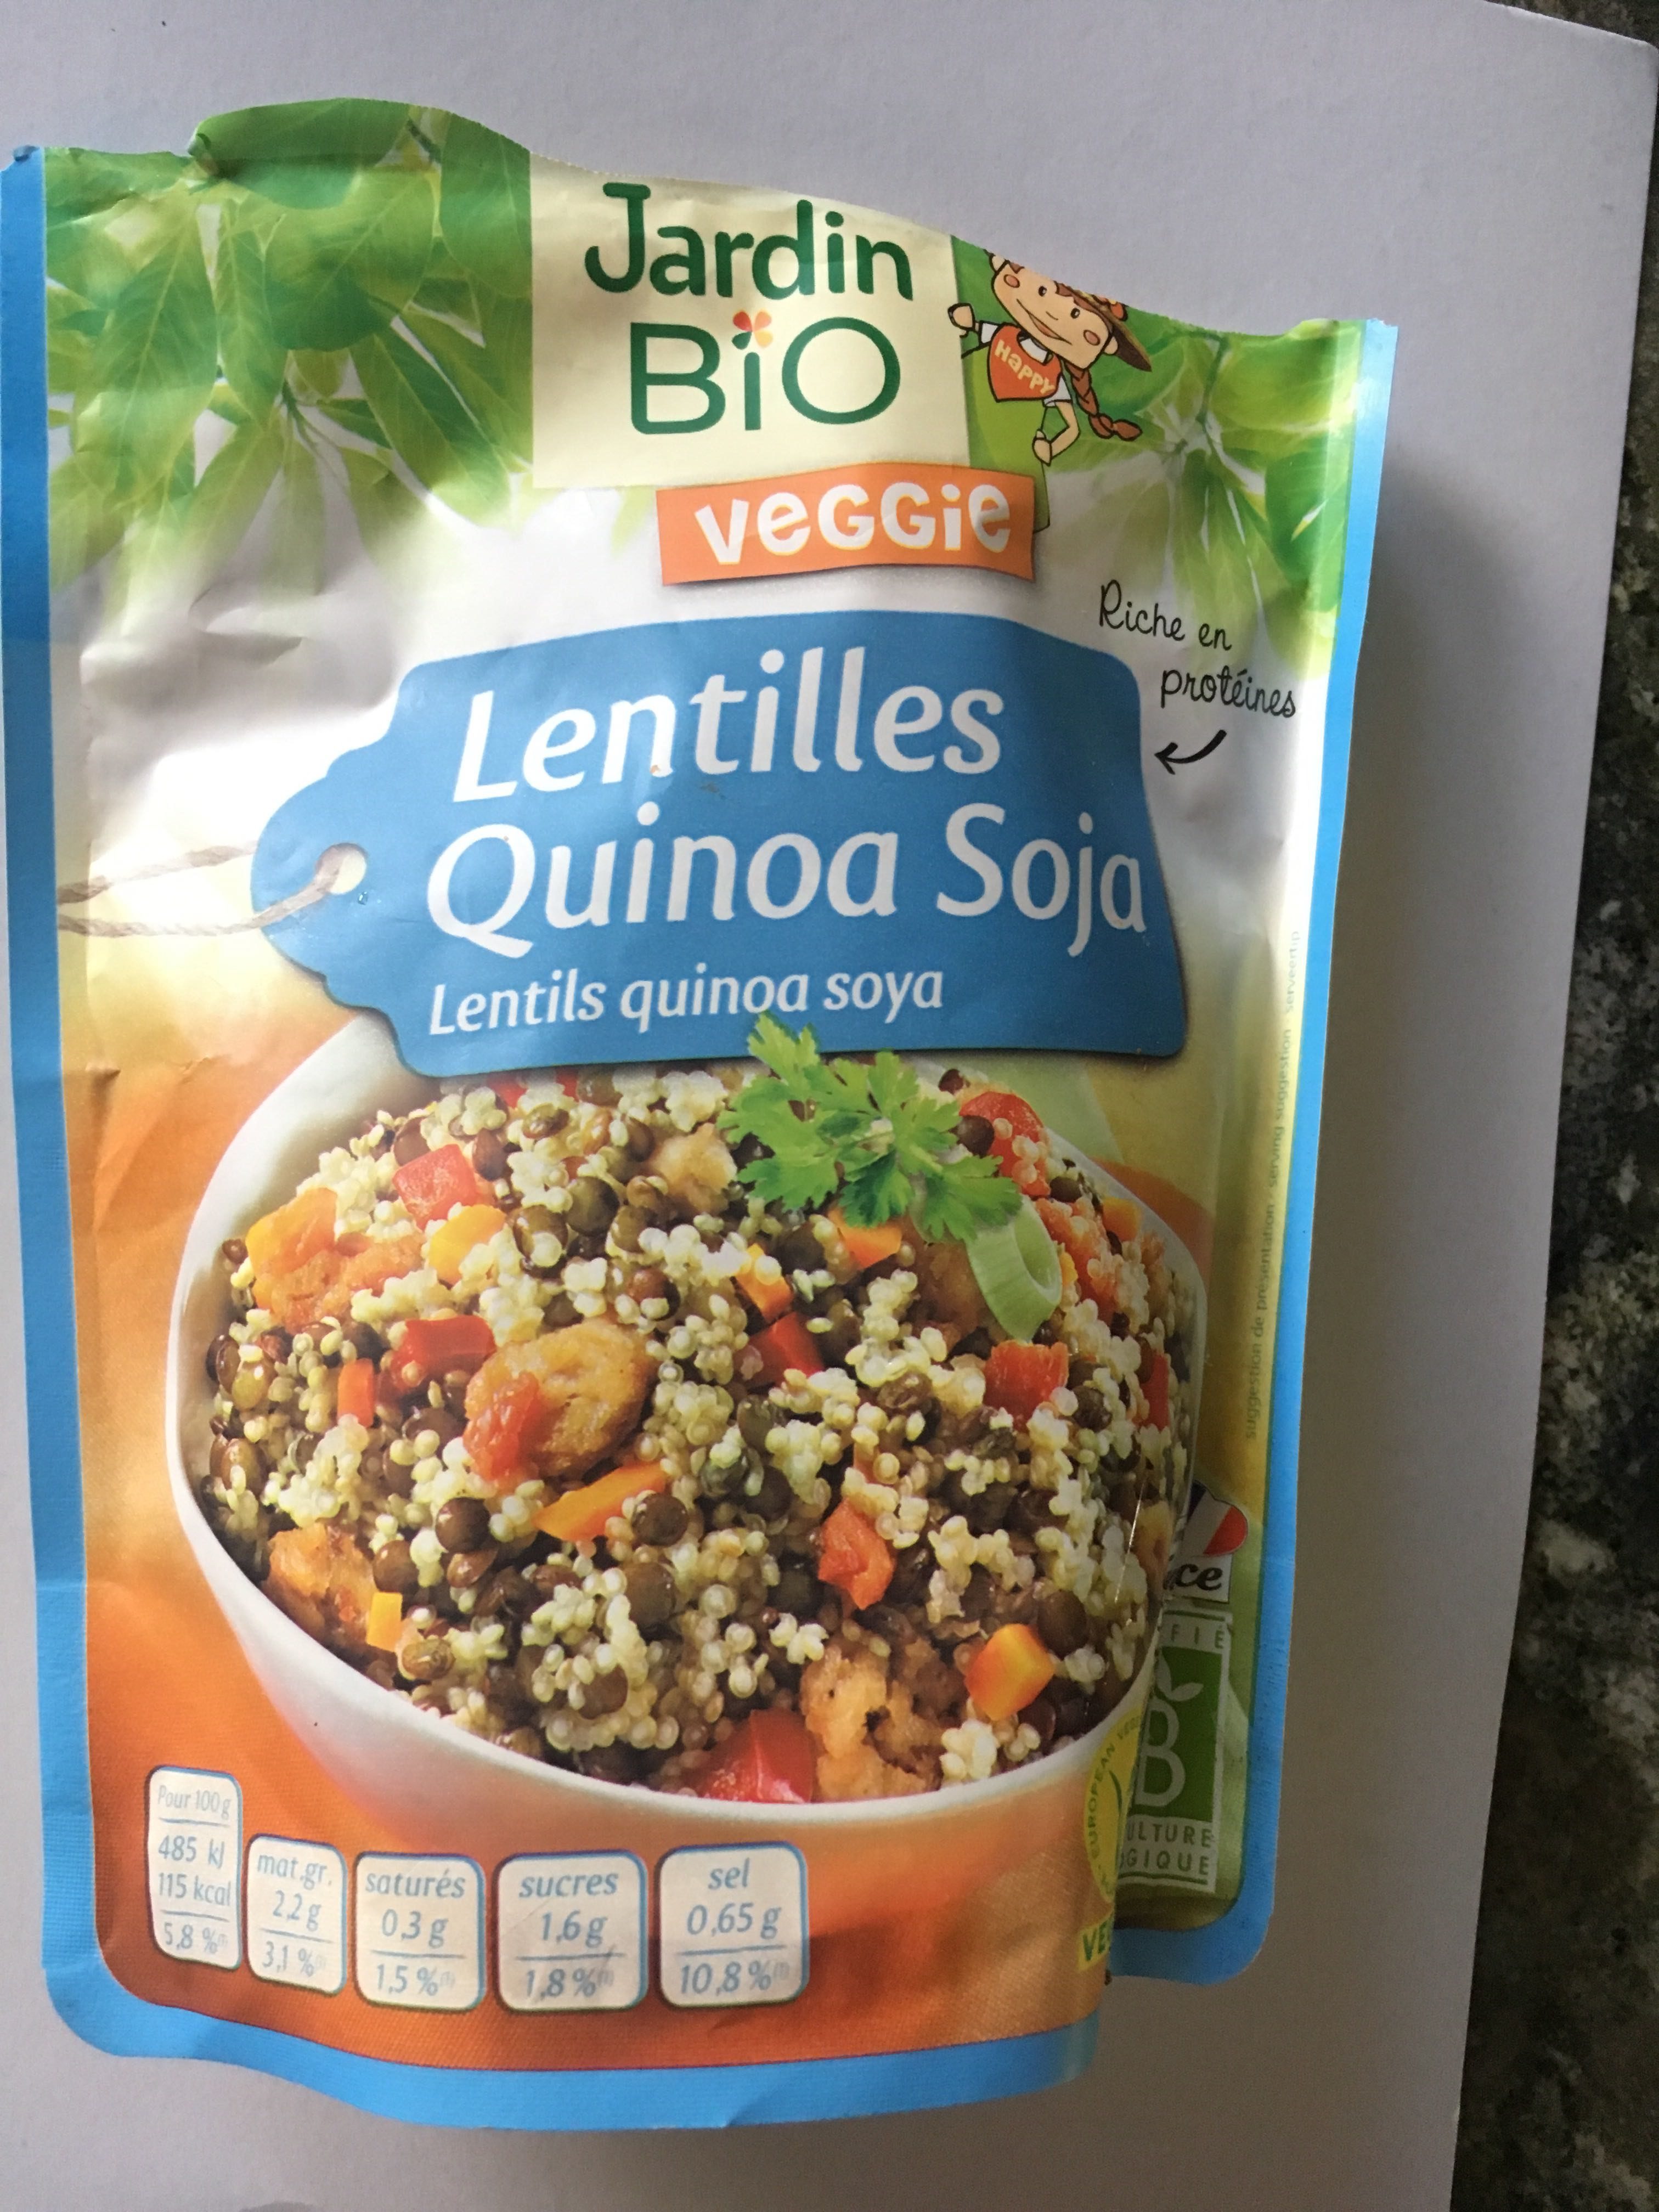 lentilles quinoa soja - Produto - fr